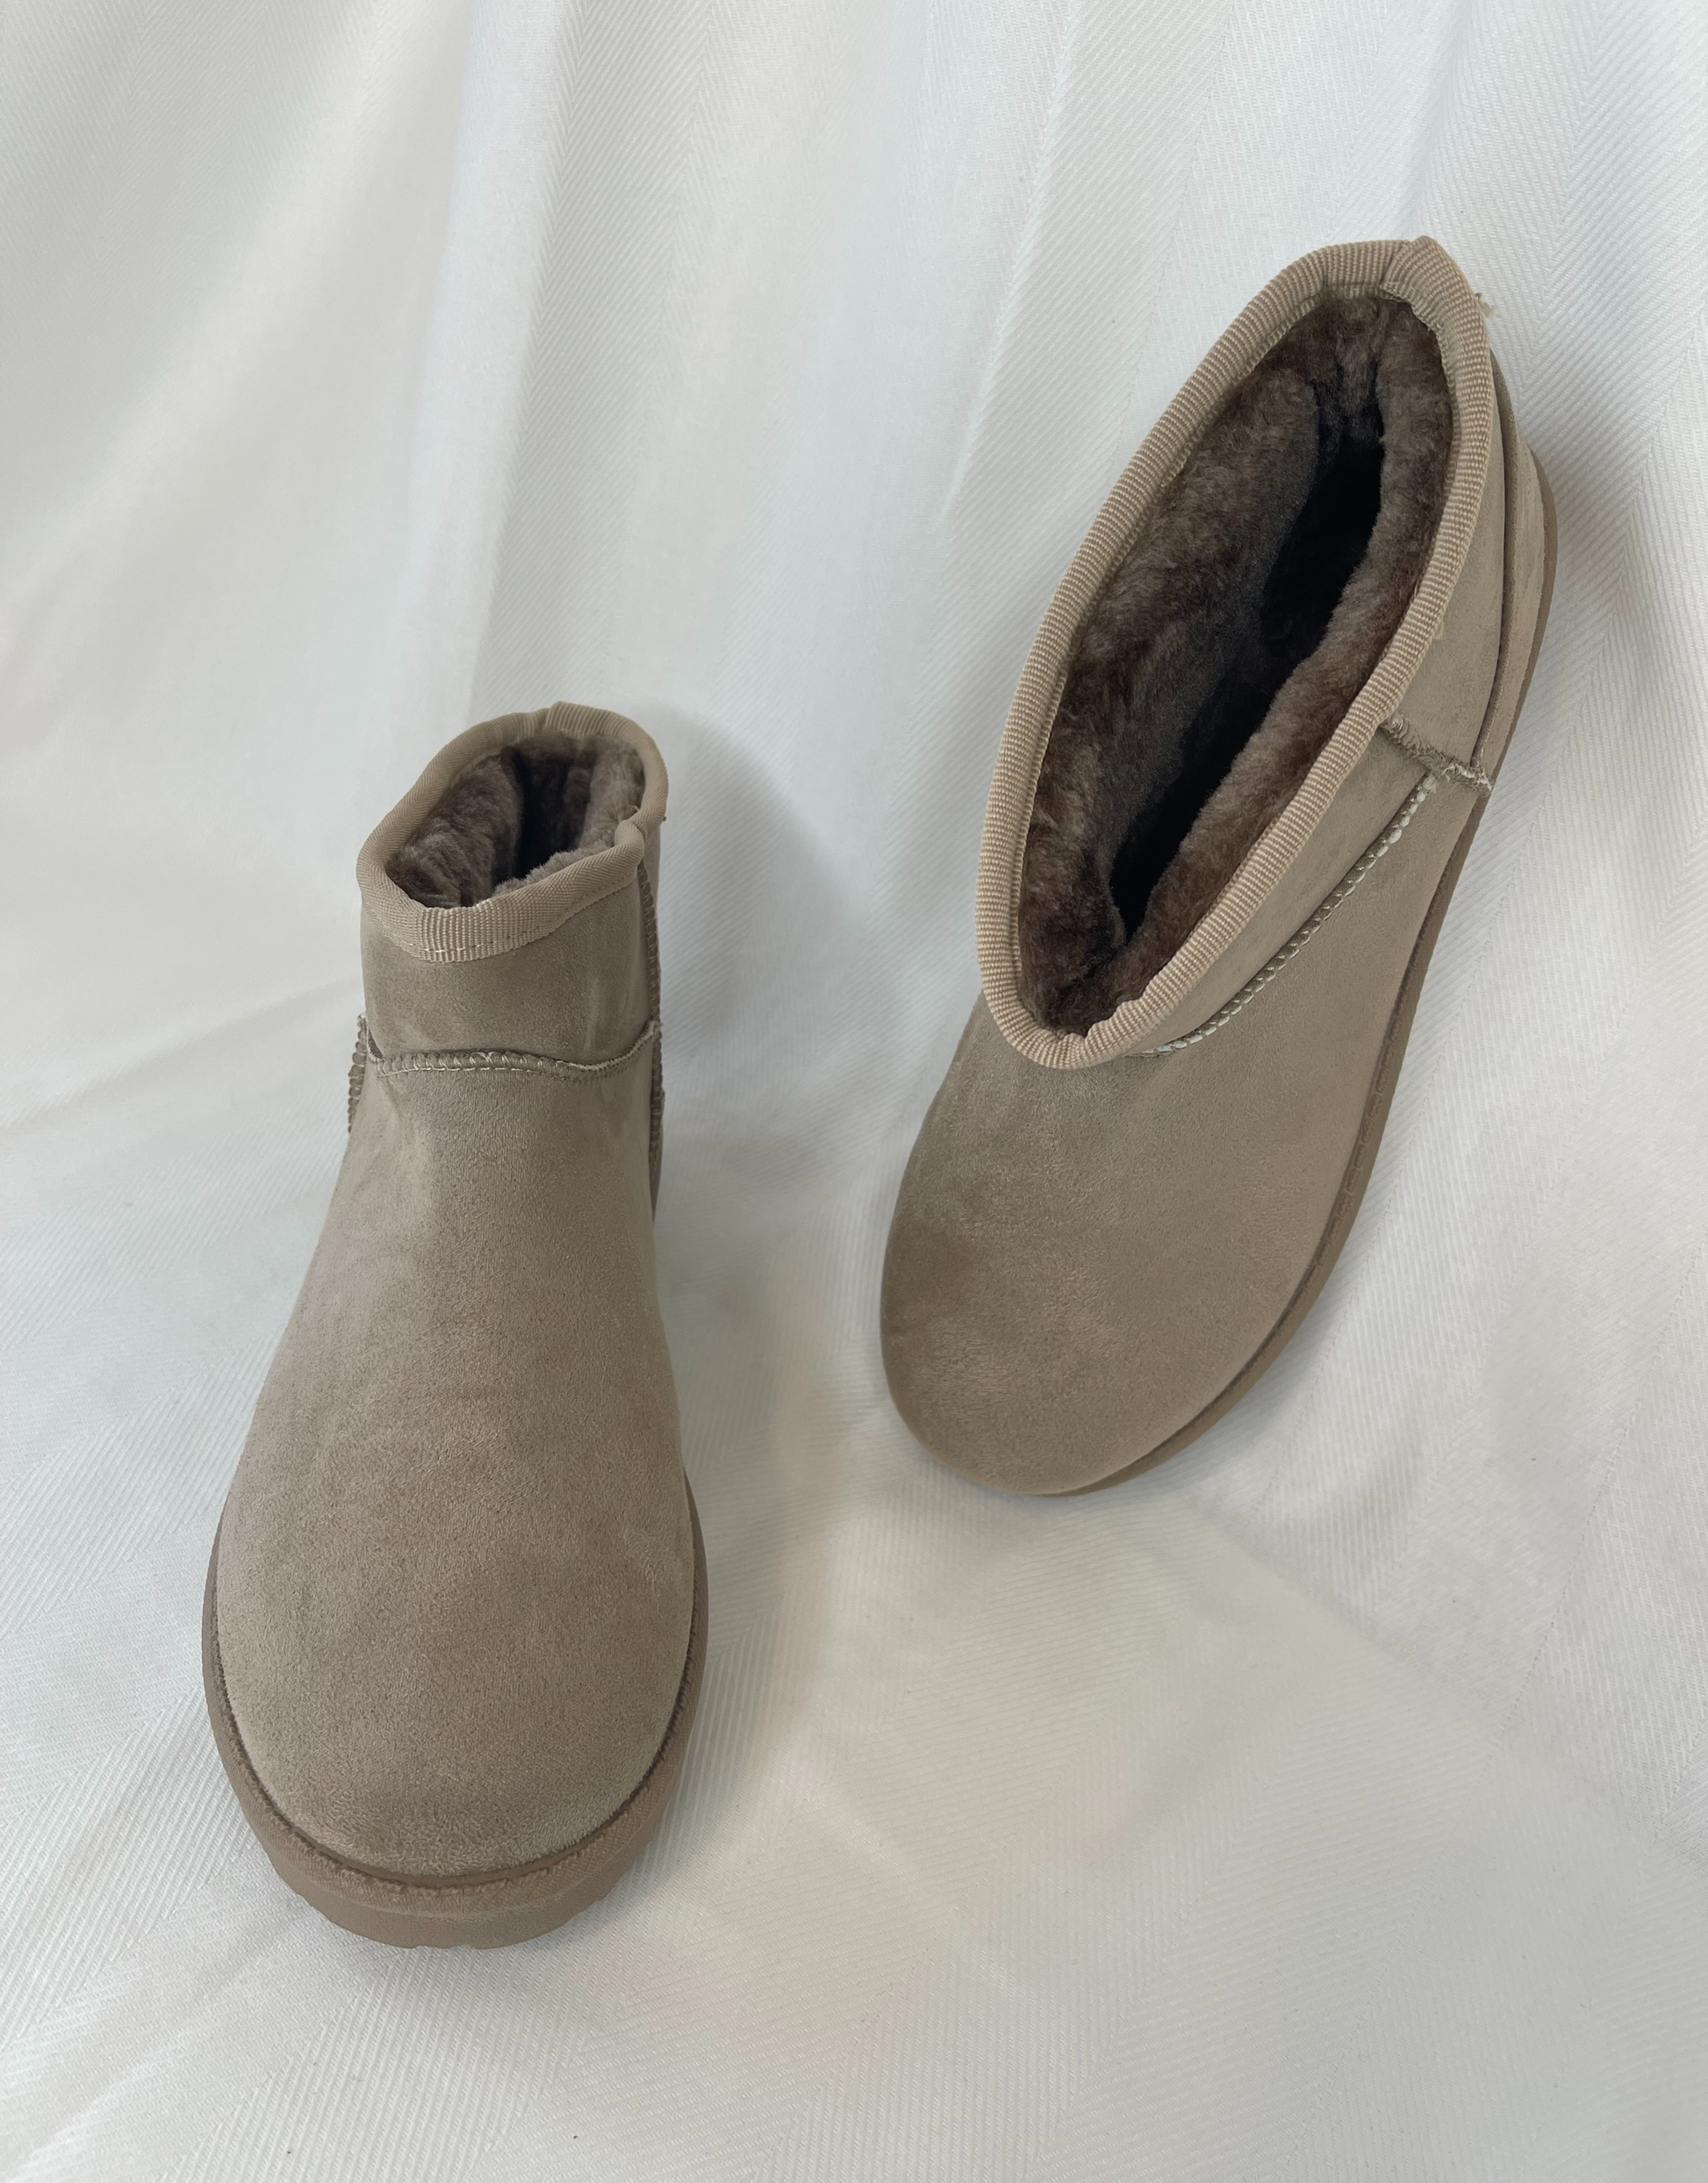 Vores Ella bamsestøvler er bløde og lækre, og er et musthave til efterårs- og vintergarderoben.  Materiale: 100% kunststof  Mål på sål: 2,5 cm Pasform: Normal til lille i størrelsen